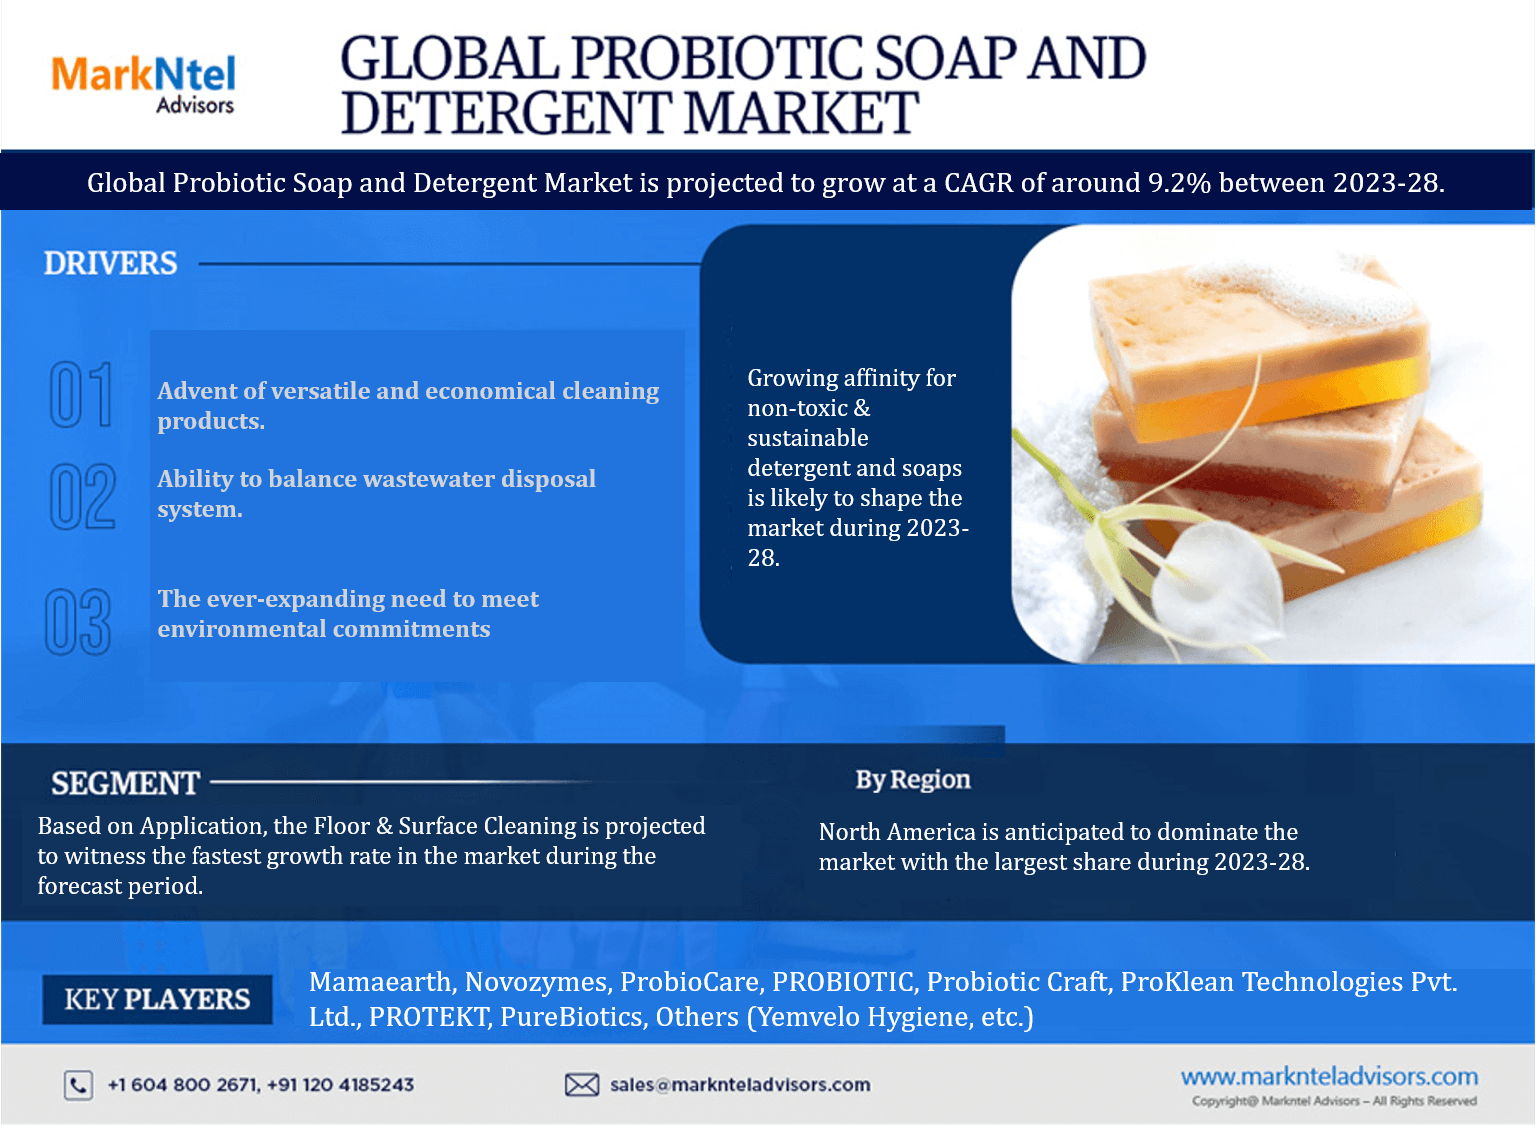 Global Probiotic Soaps & Detergents Market